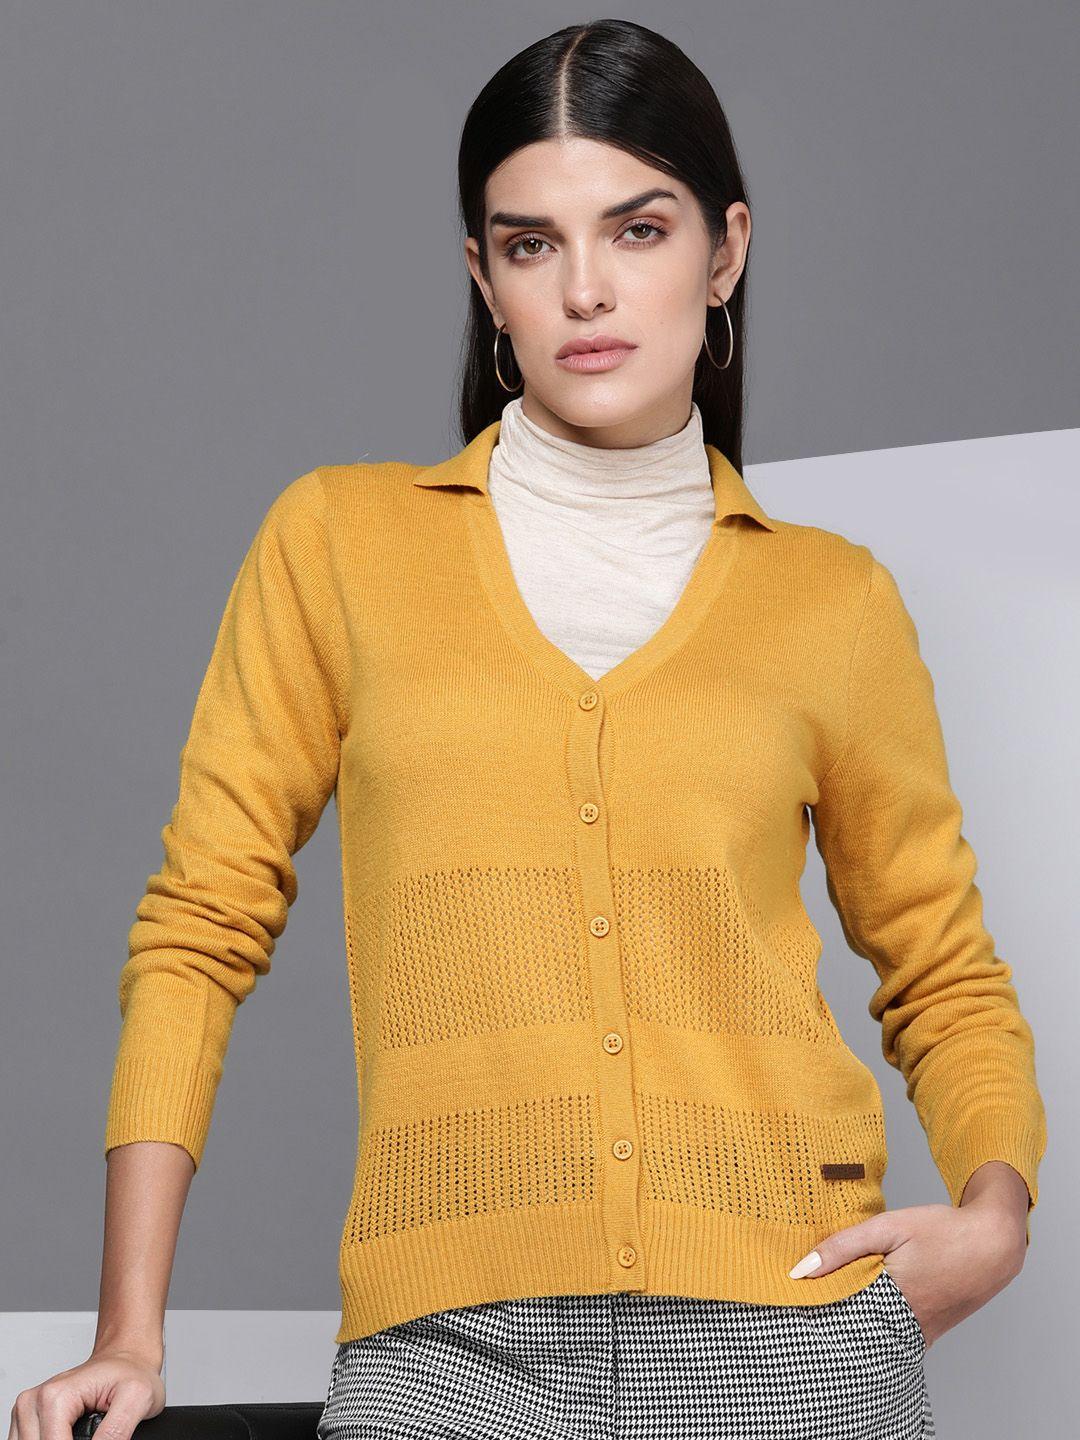 kenneth-cole-deft-women-mustard-self-design-open-knit-cardigan-sweater